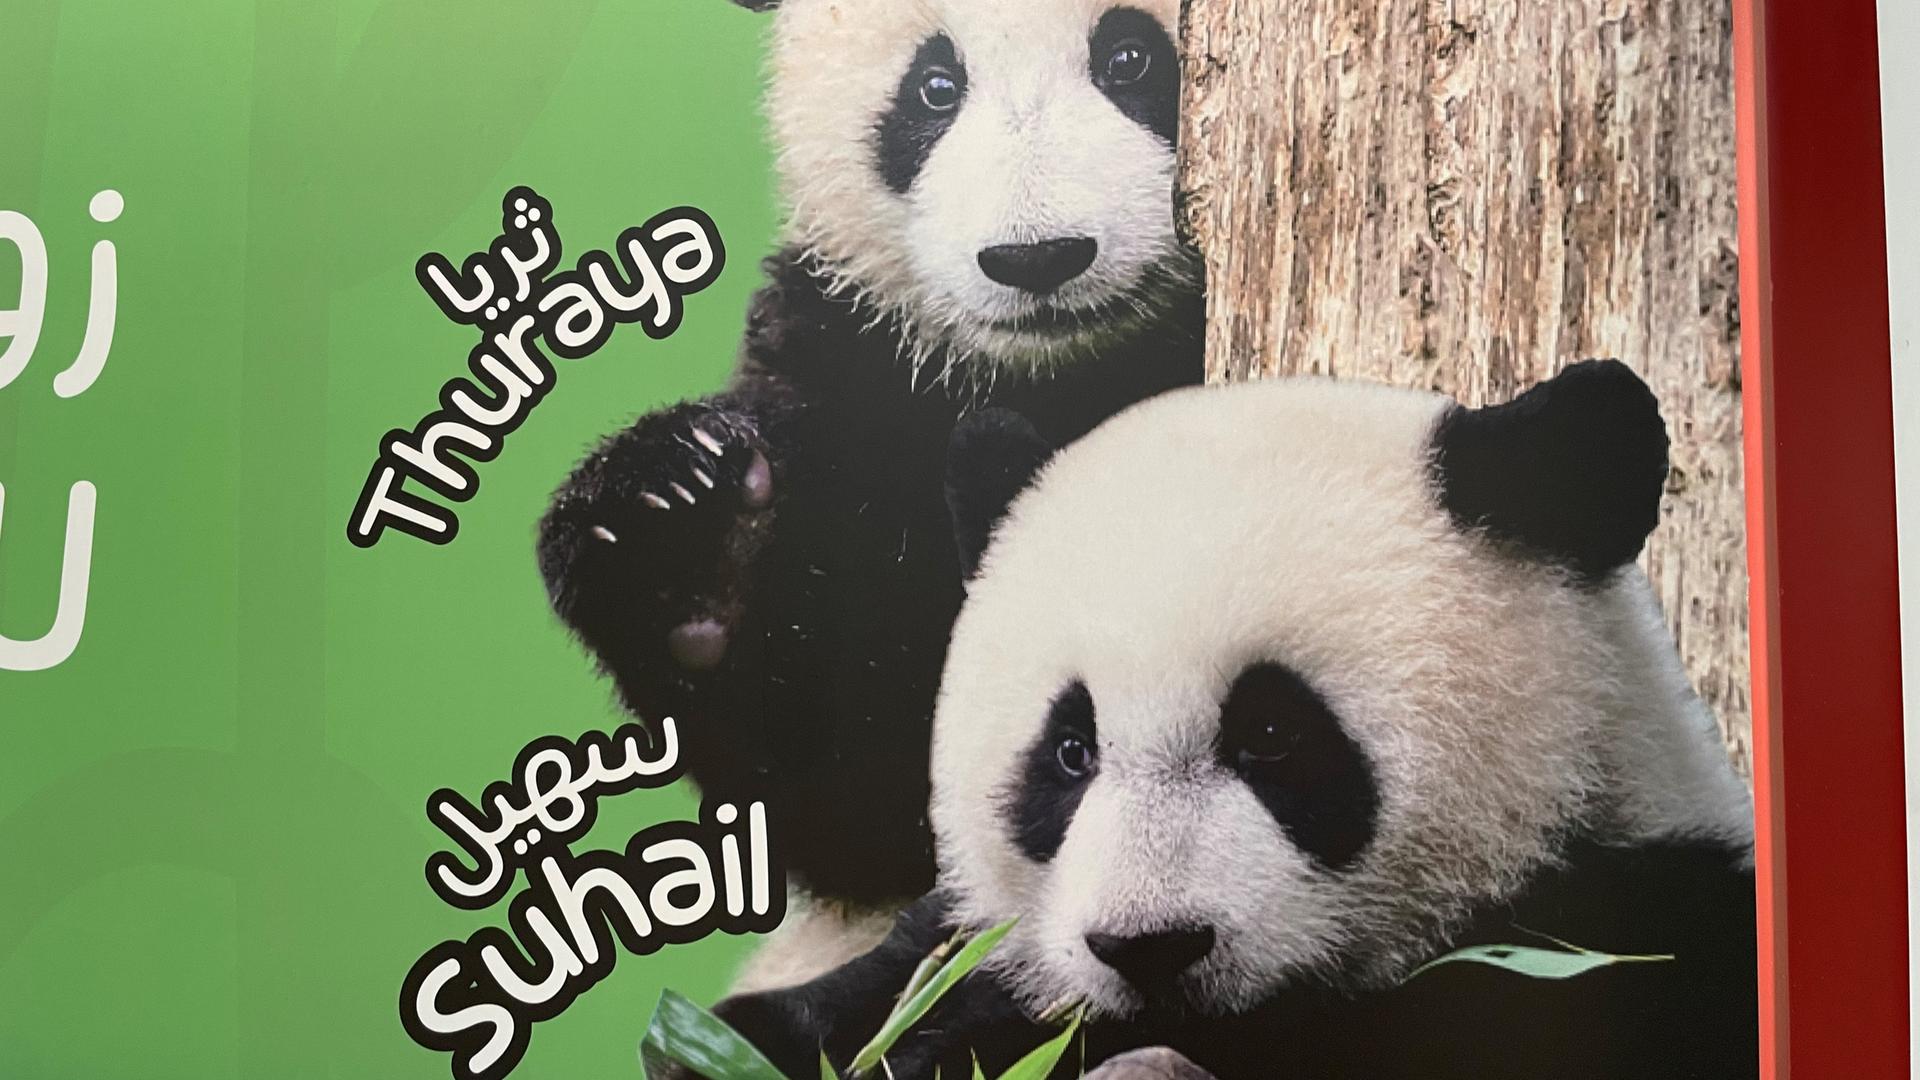 Werbung mit Pandas in einer Metrostation in Doha während der Fußball-WM 2022